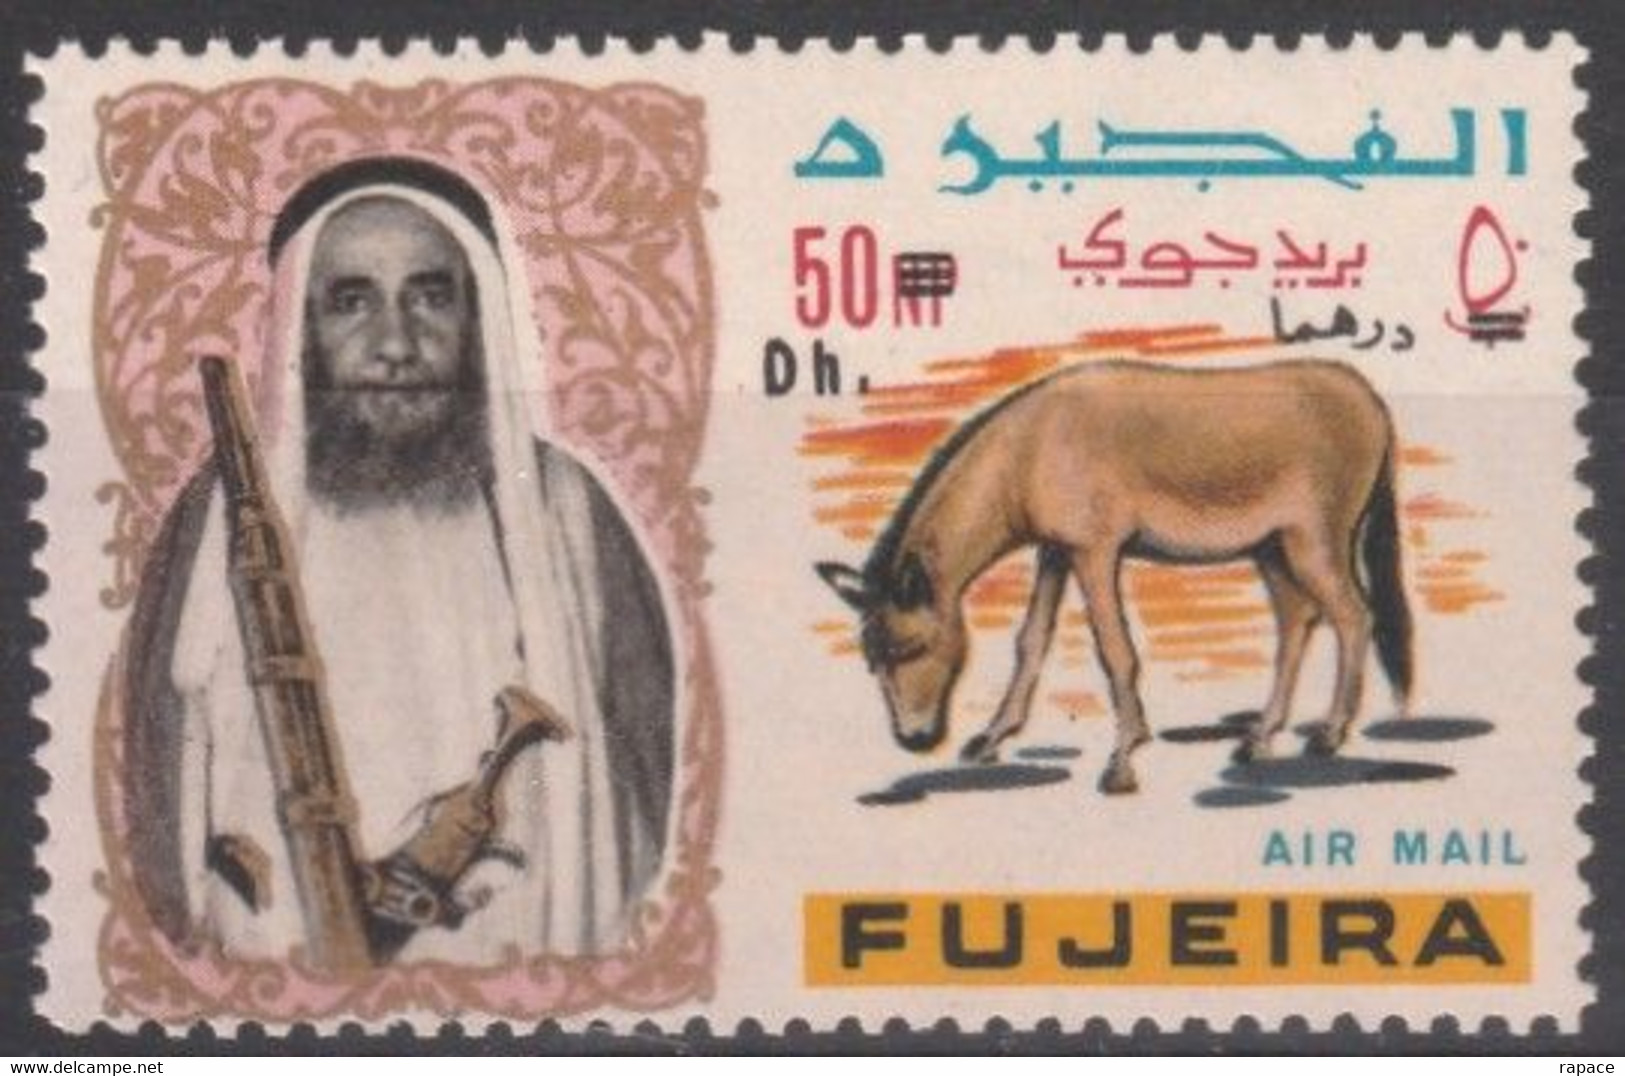 Fujeira 1967 Timbre Surchargé - Onagre De Perse (Equus Hemionus Onager) - Burros Y Asnos